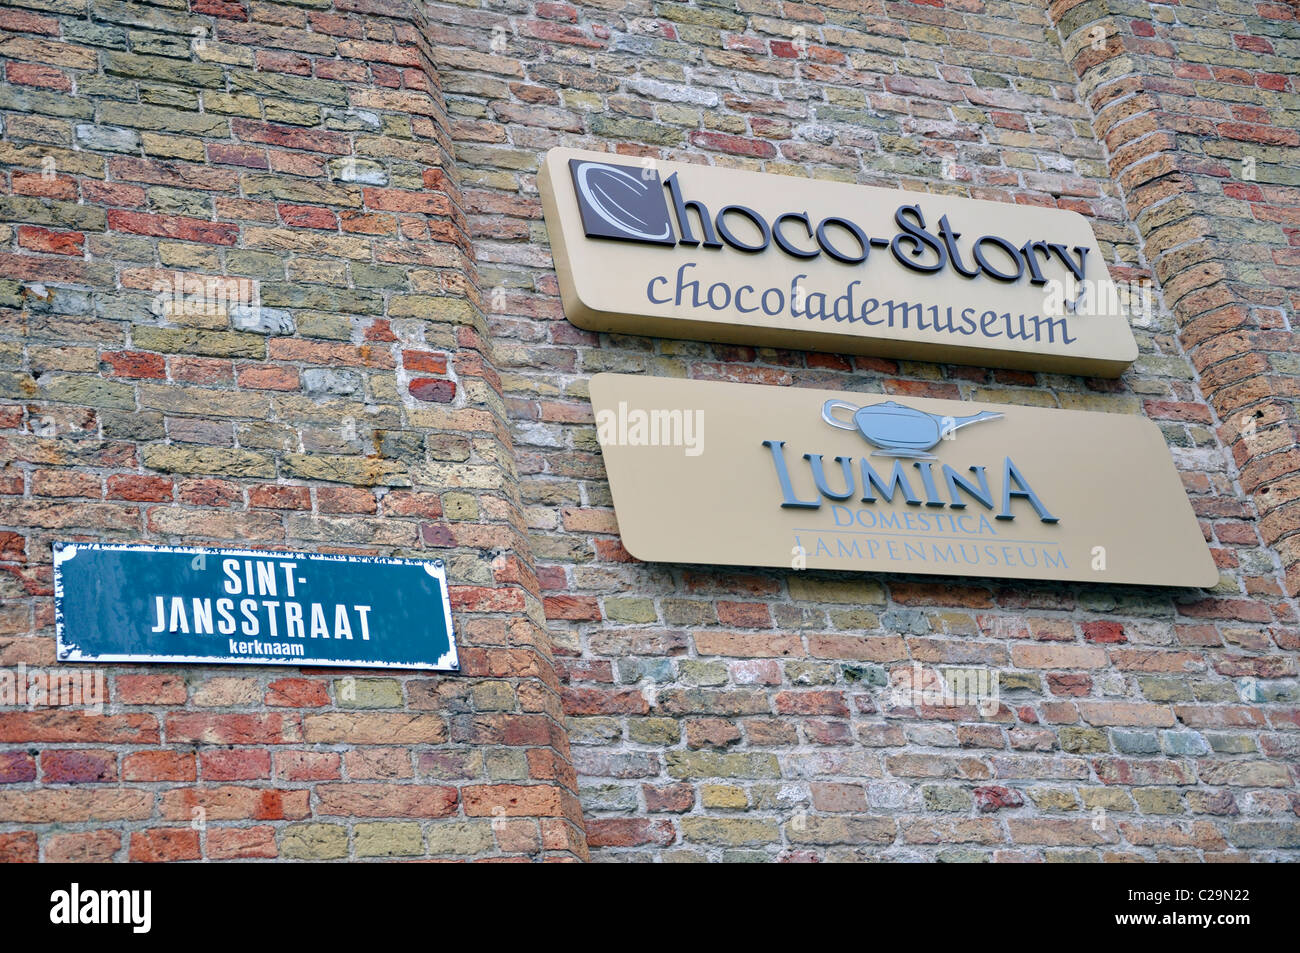 Bruges, Belgio - Huis de Croon Museum - Museo del Cioccolato e museo della lampada Foto Stock